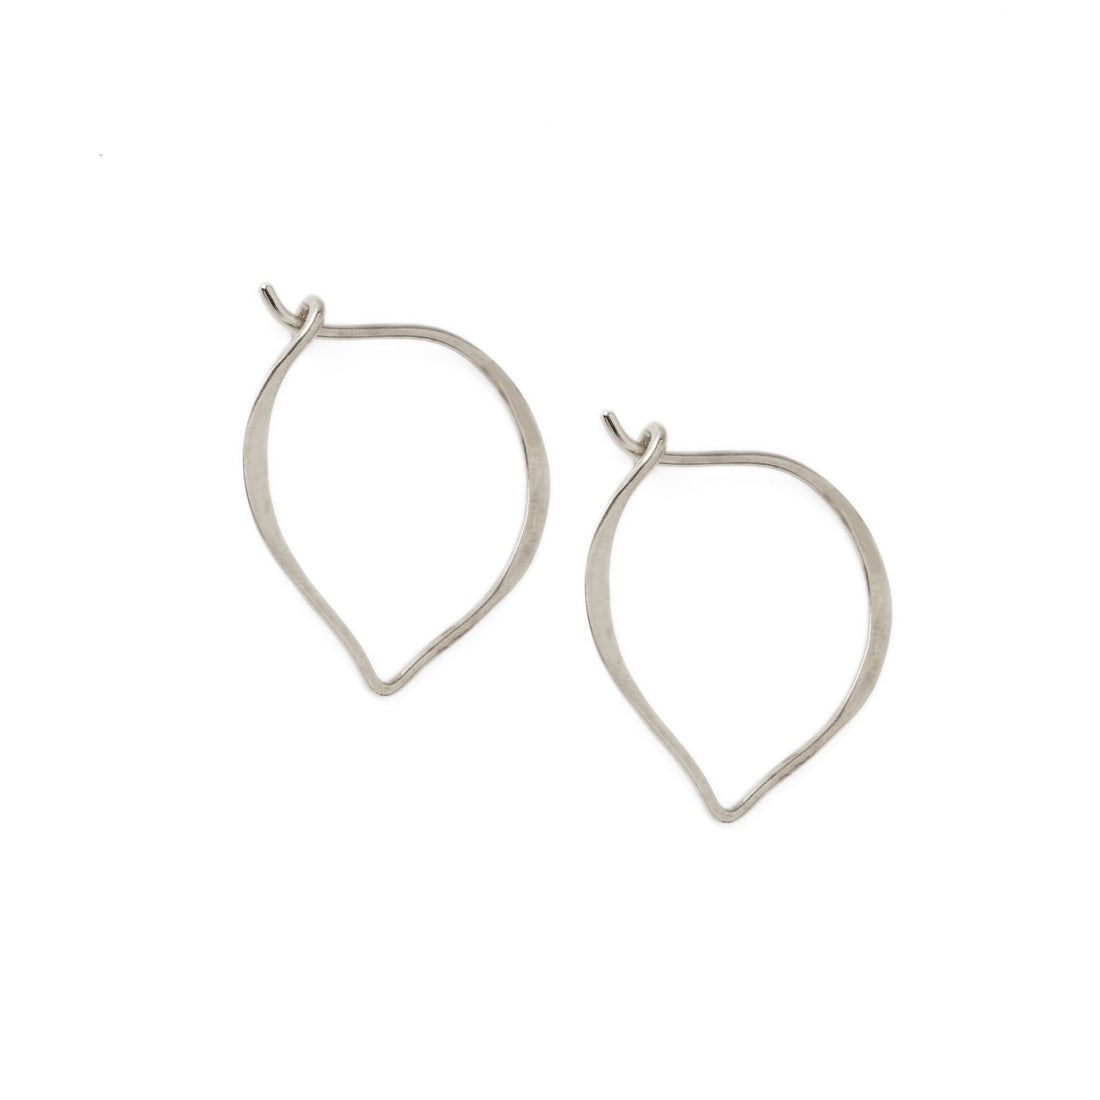 pair of silver Marrakesh hoop earrings left side view